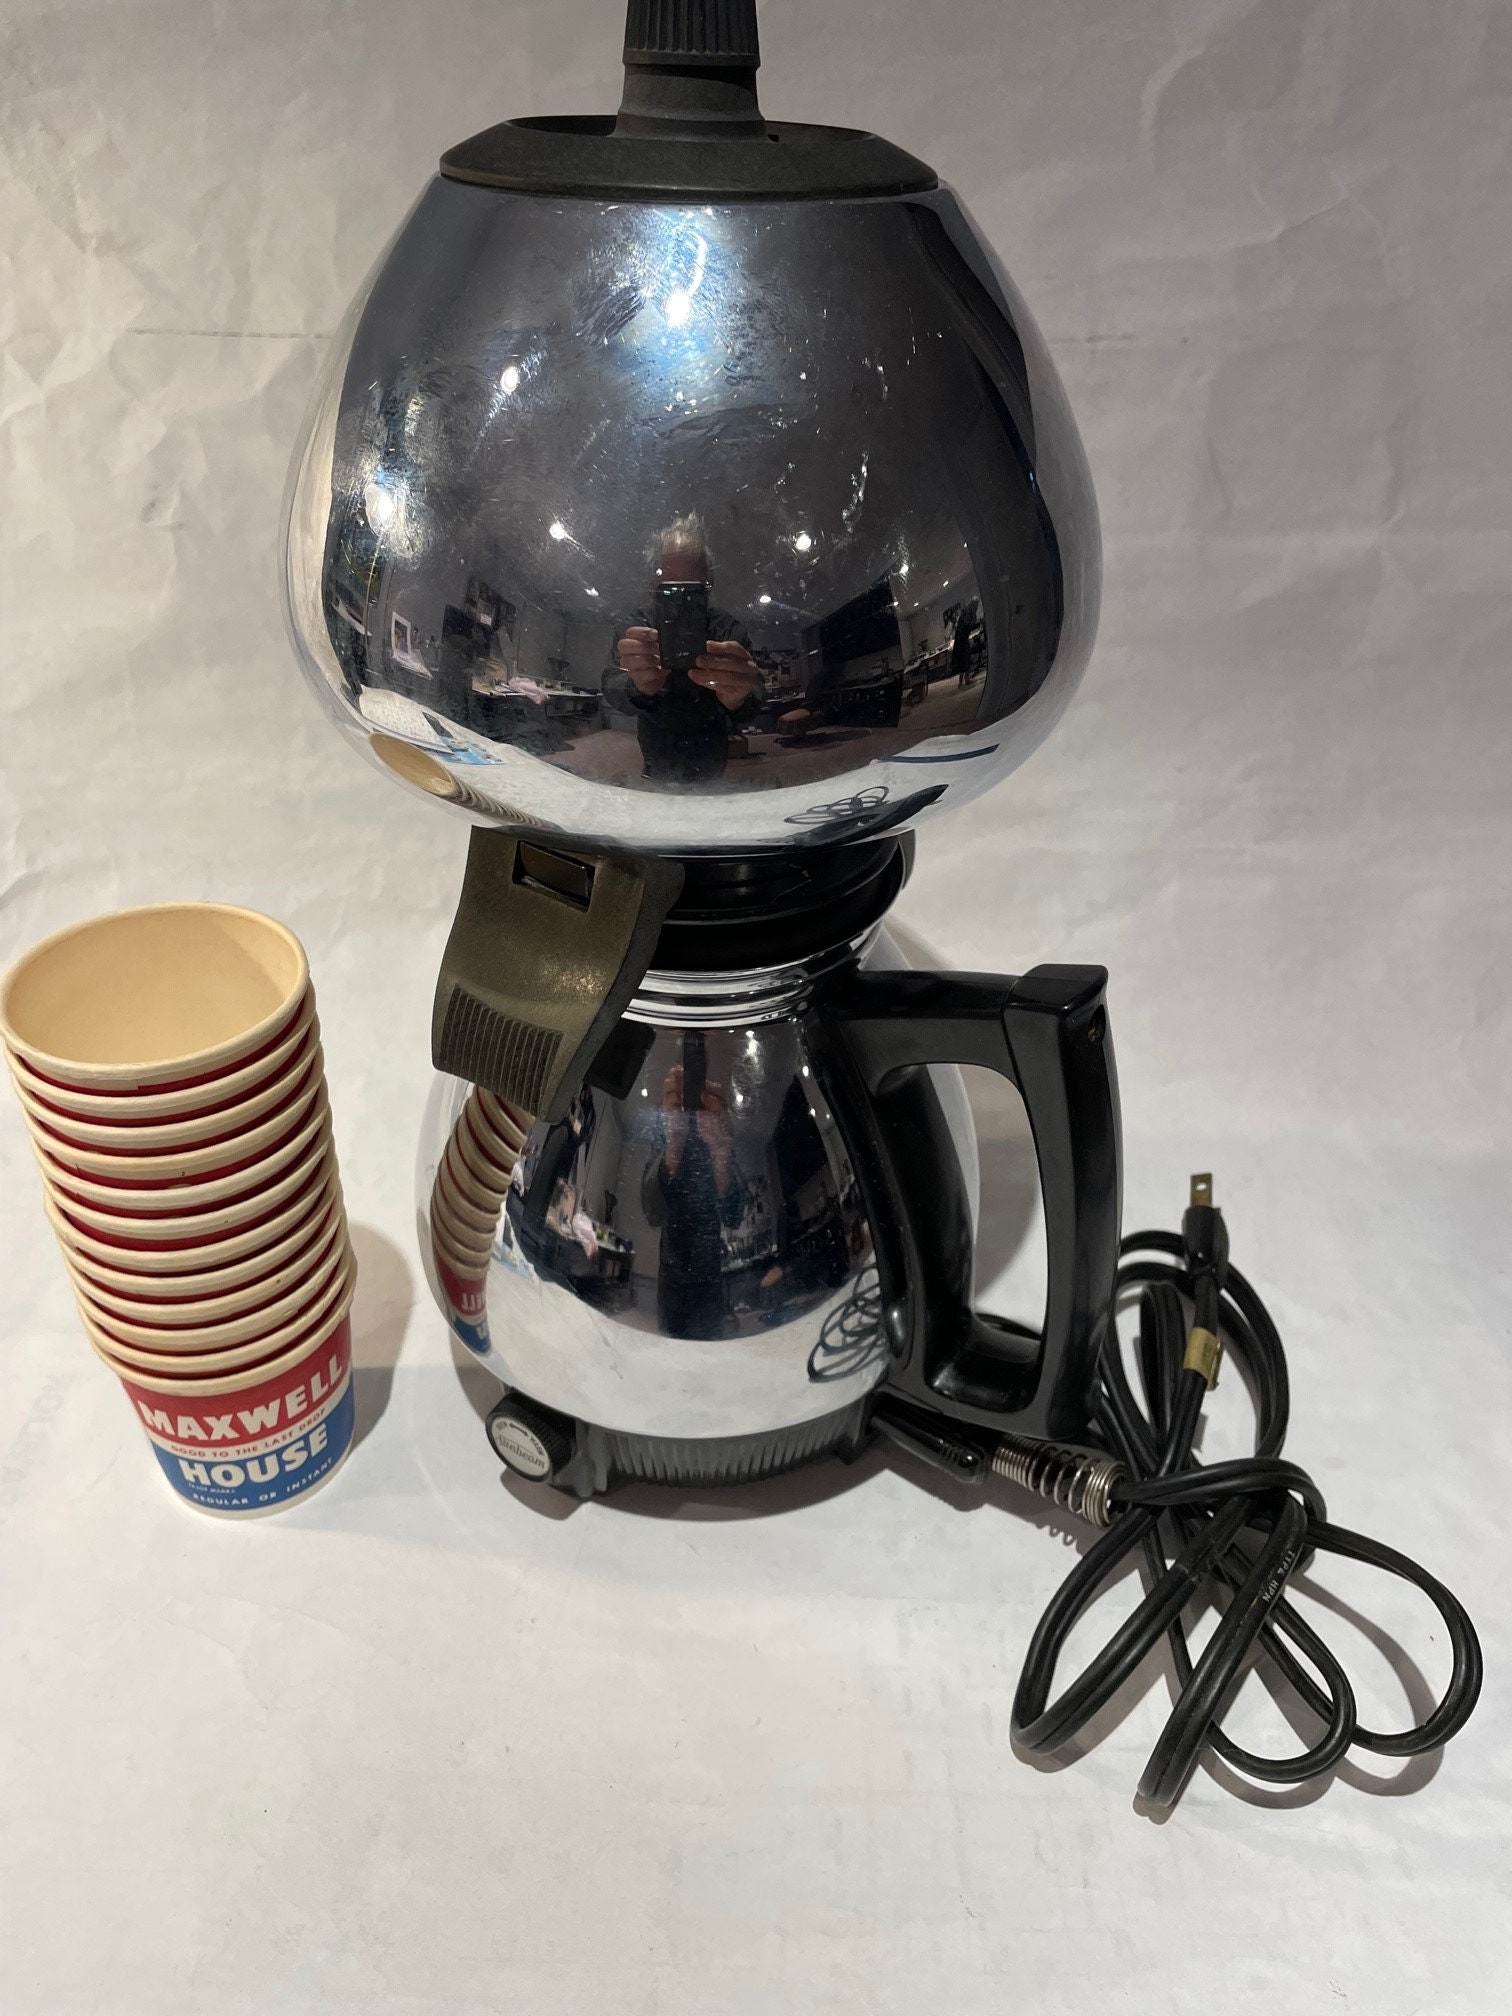 Vintage 70s 80s Sunbeam Hot Shot Mid Century Coffee Maker Keurig Single Cup